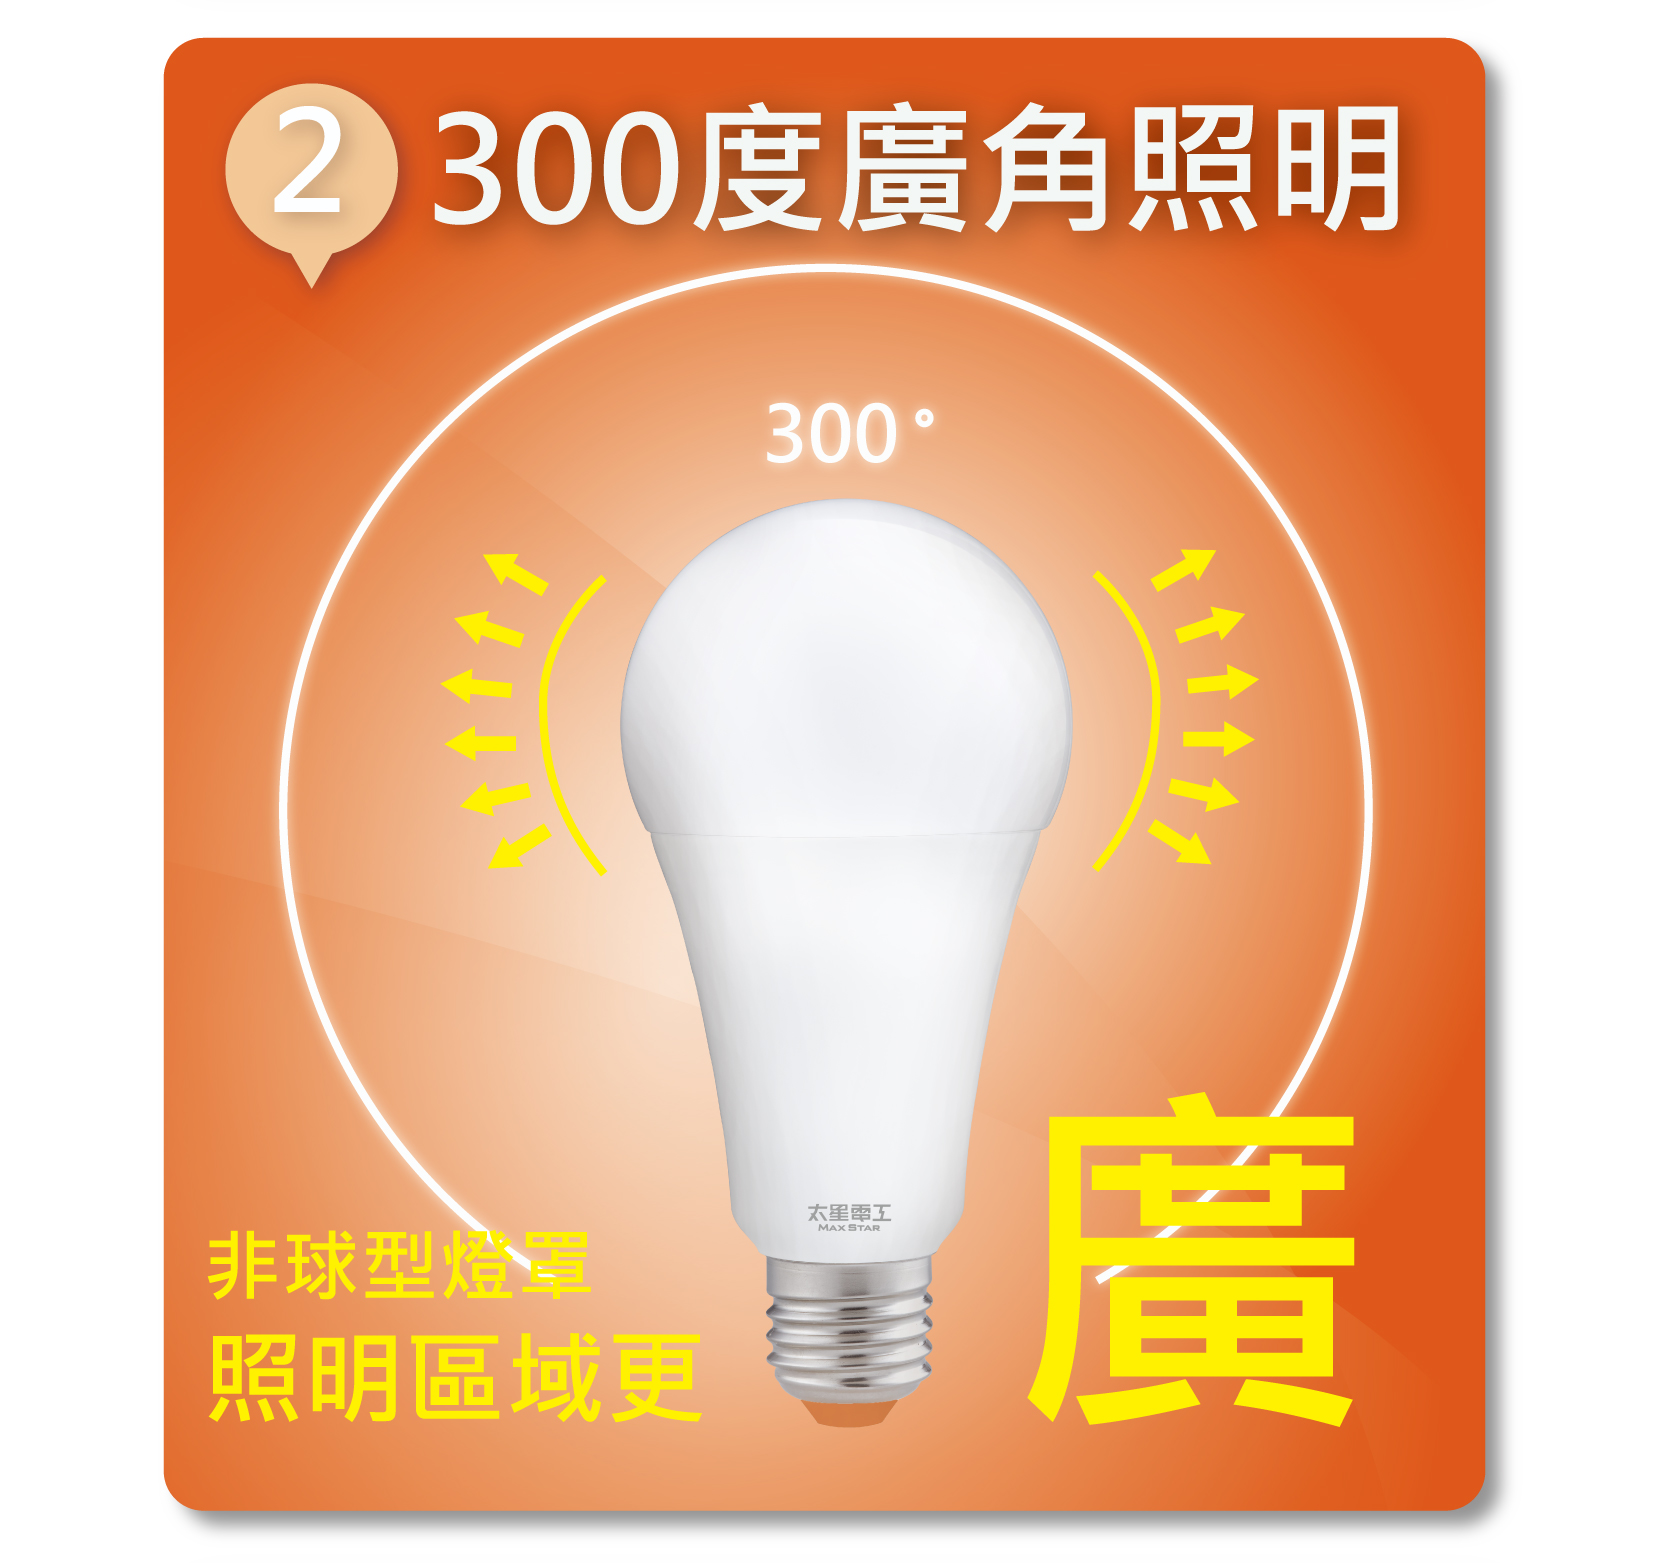       【太星電工】16W超節能LED燈泡/白光(20入)